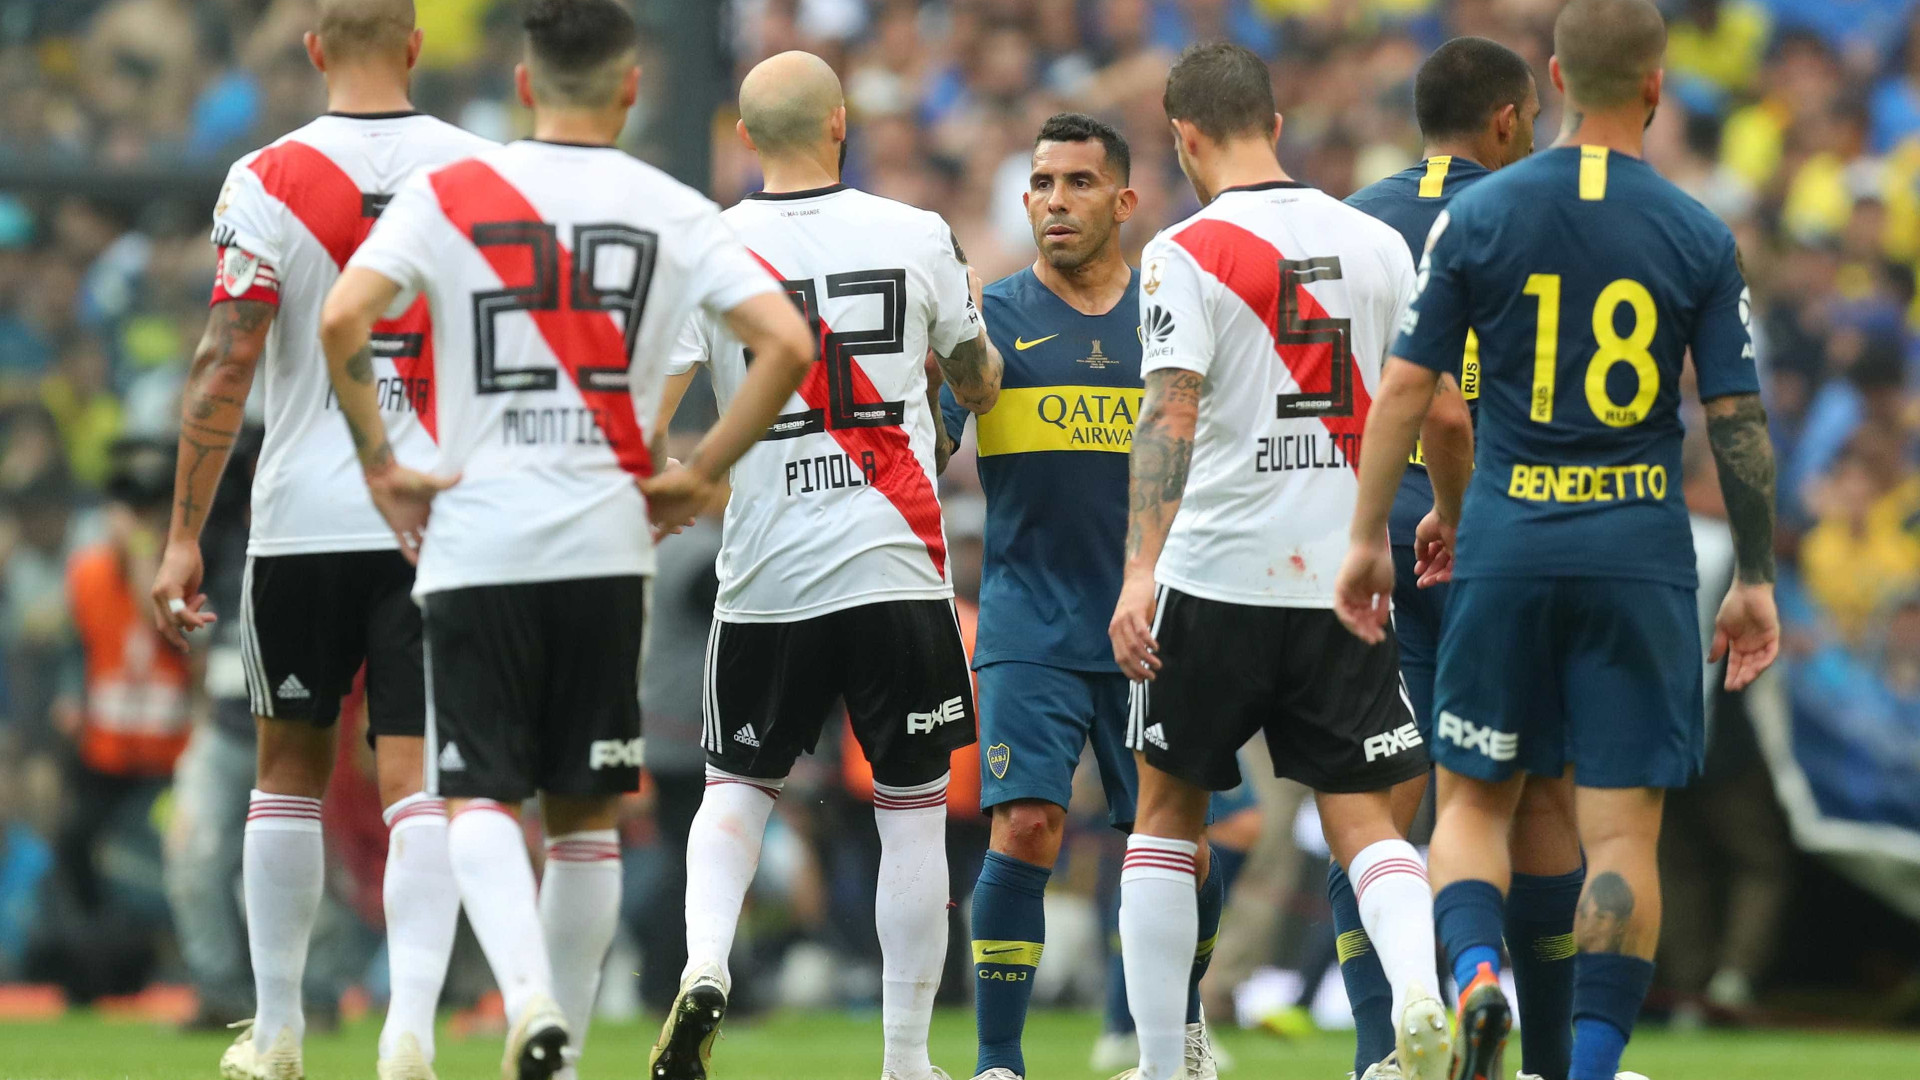 Em grande clássico, River e Boca empatam na 1ª final da Libertadores